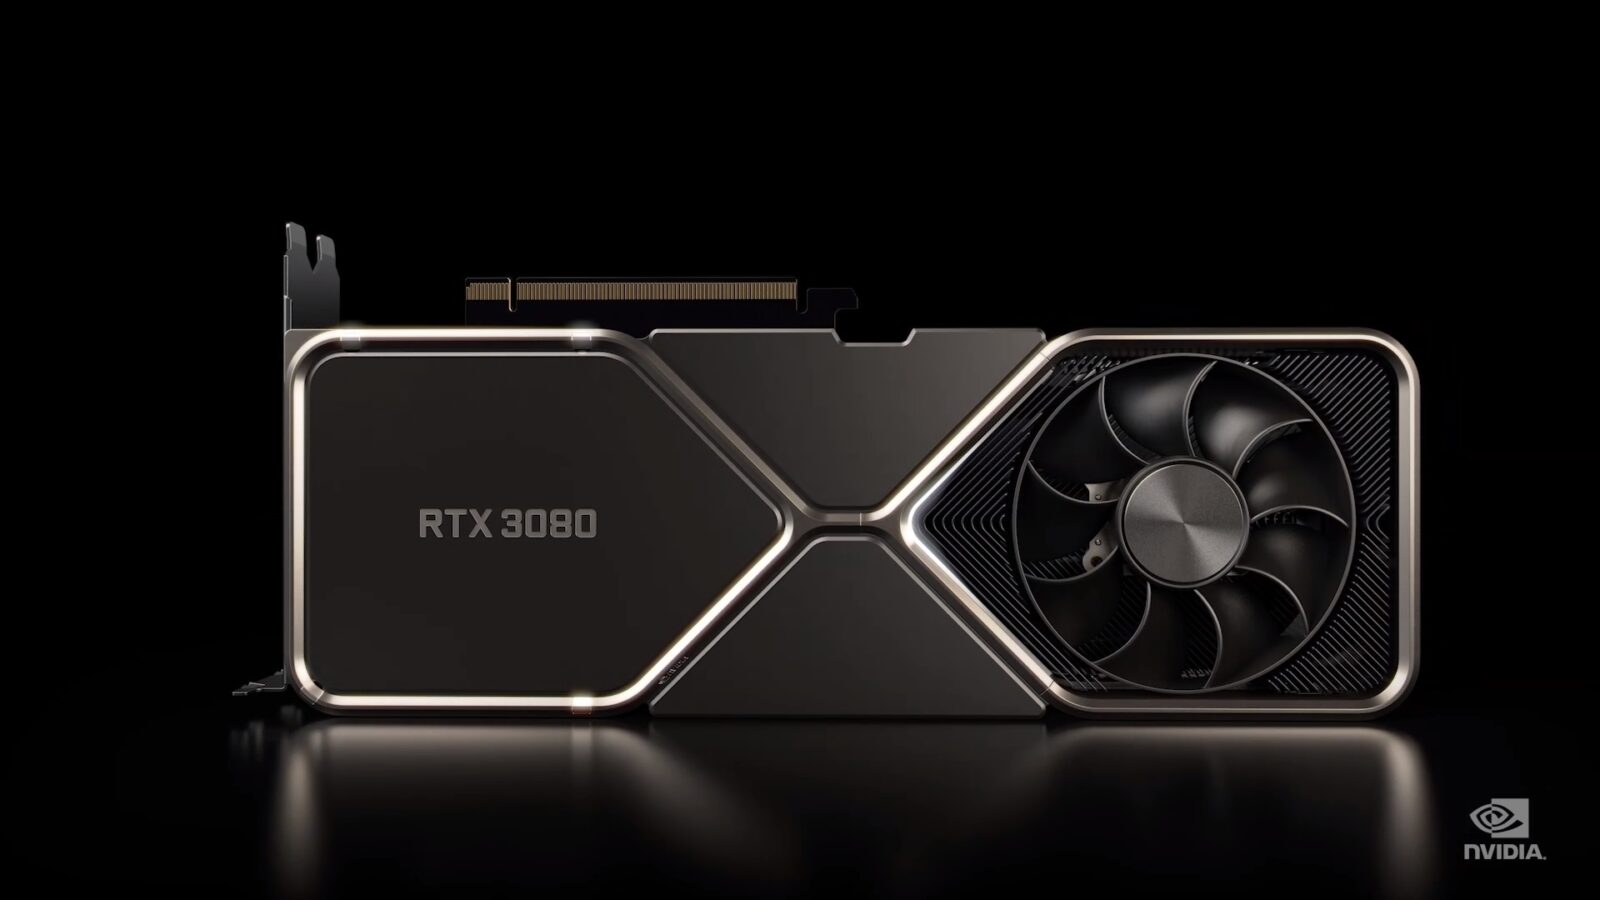 Dilaporkan, Nvidia Telah Memperbaiki Permasalahan Crash RTX 3080 via Driver